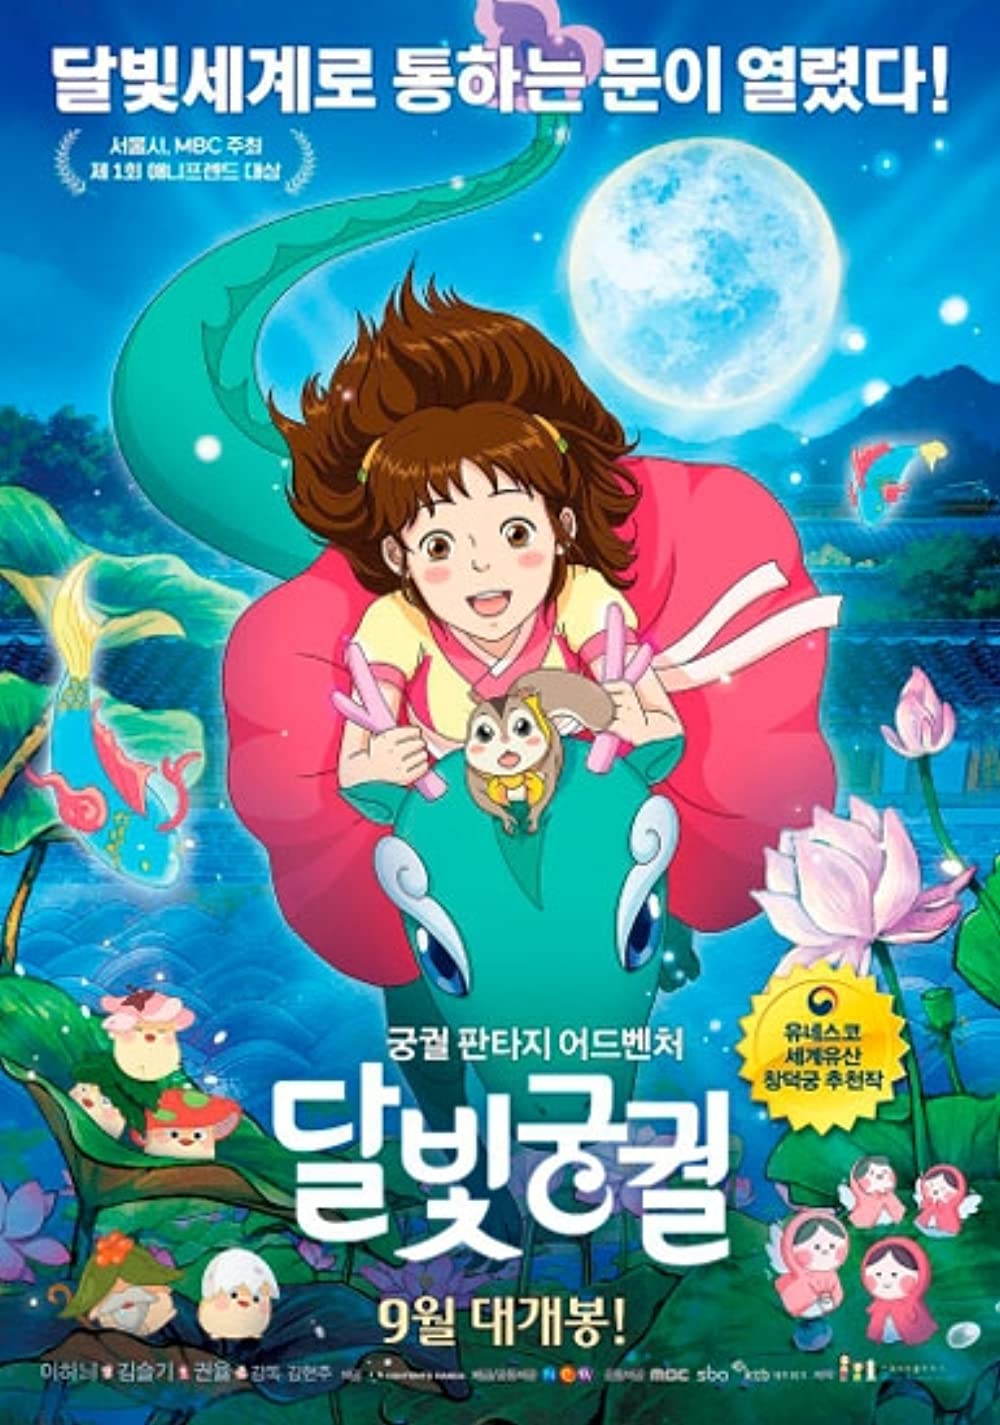 11 Film animasi Korea yang tak kalah seru, menghibur dan banyak cerita